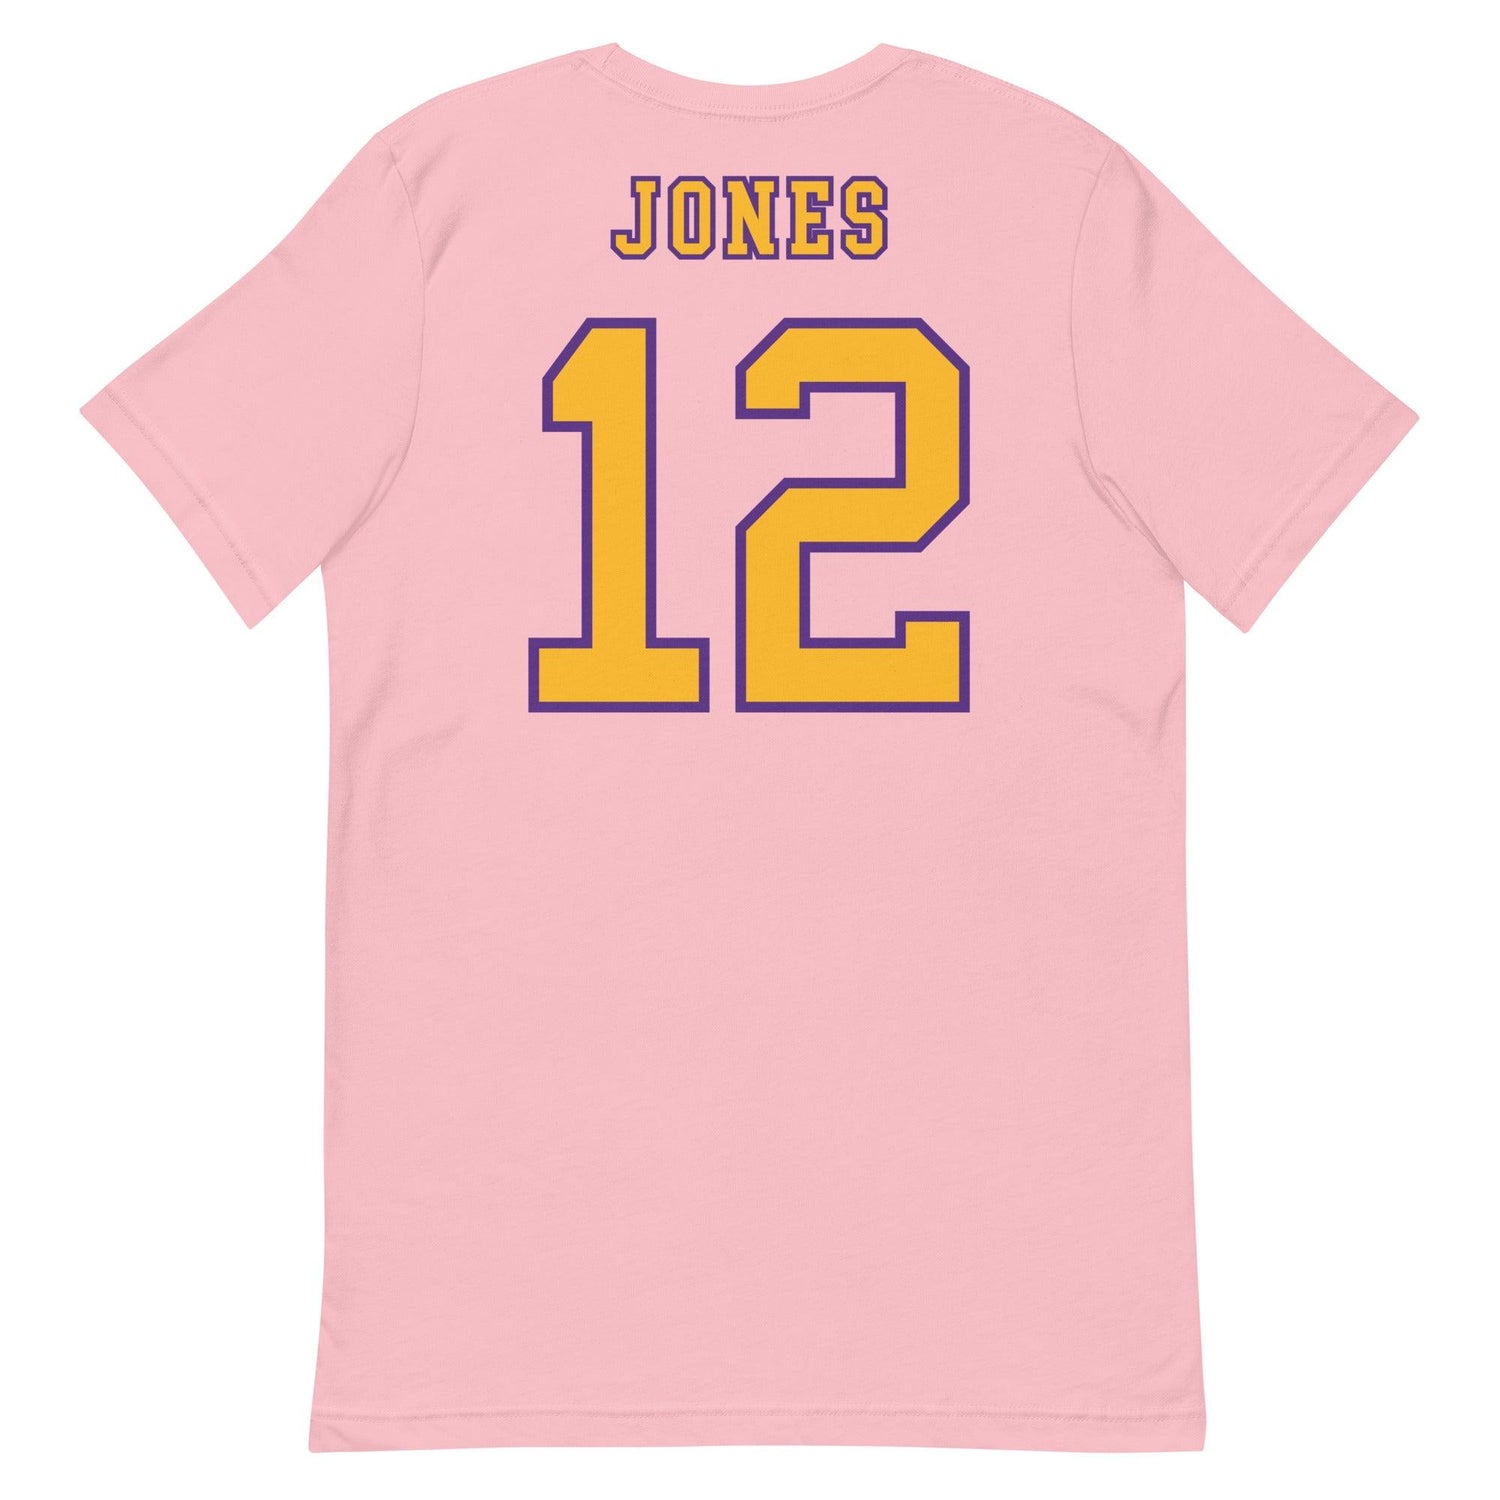 Alexis Jones "Jersey" t-shirt - Fan Arch